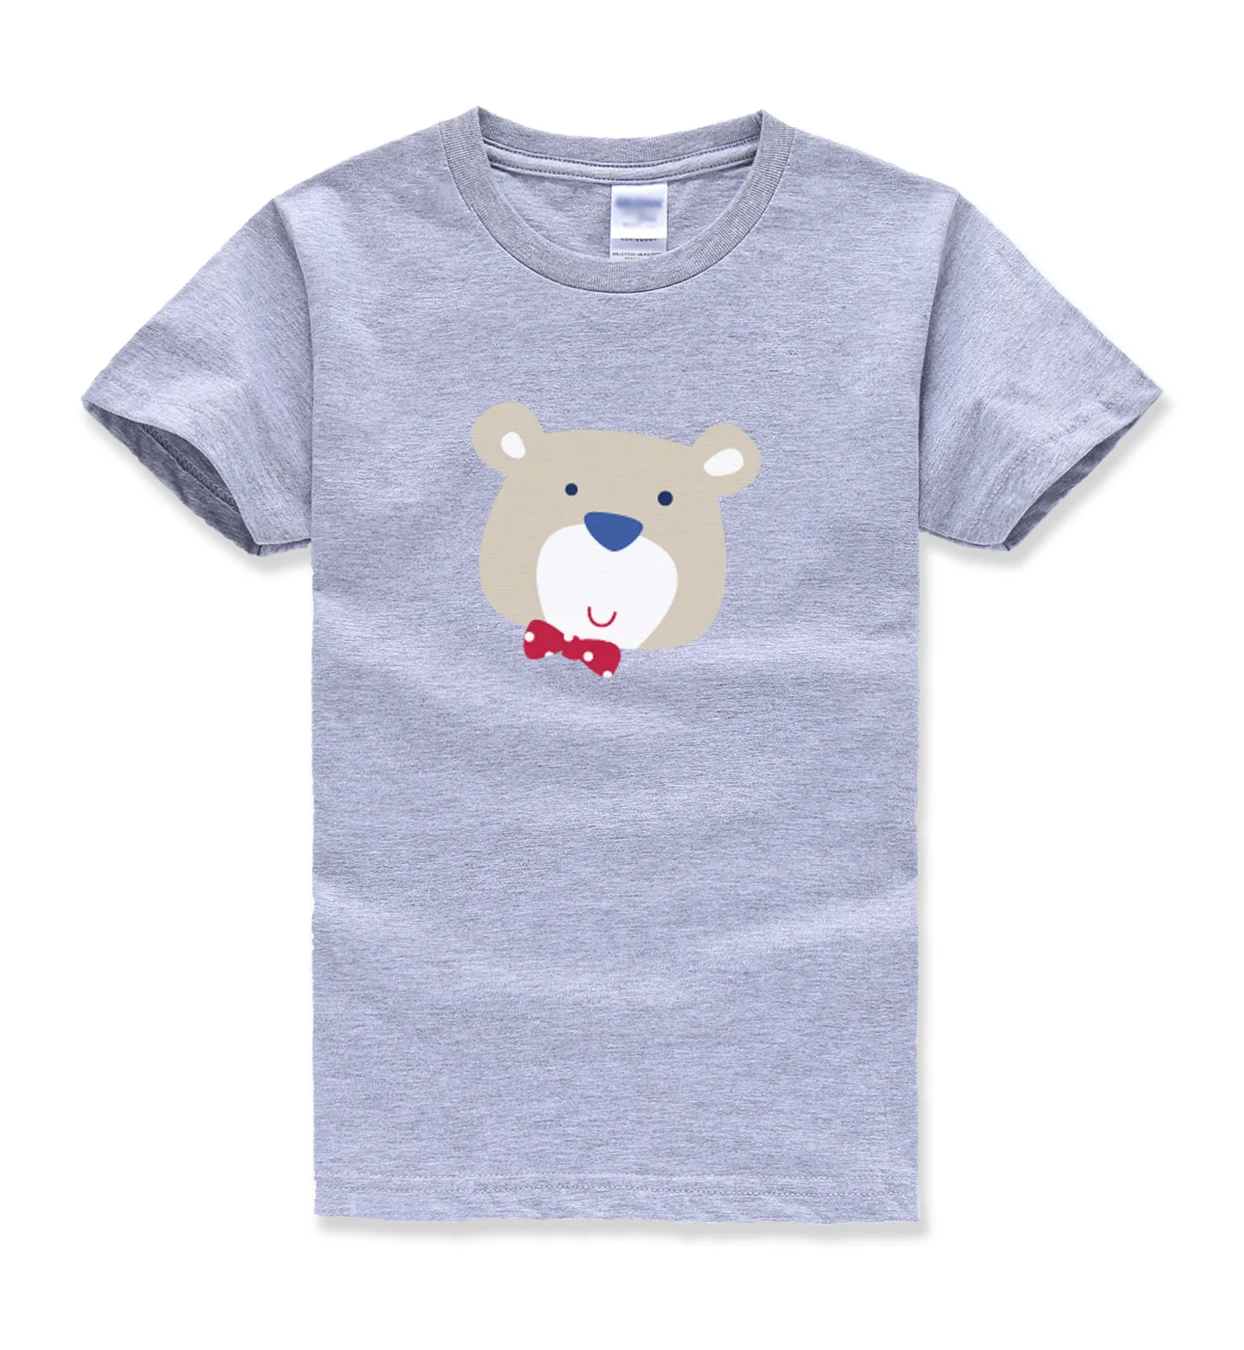 Забавный kawaii homme Футболки Дети harajuku Лето 2018 битник топы футболки милый высокое качество пользовательского футболки Одежда для мальчиков